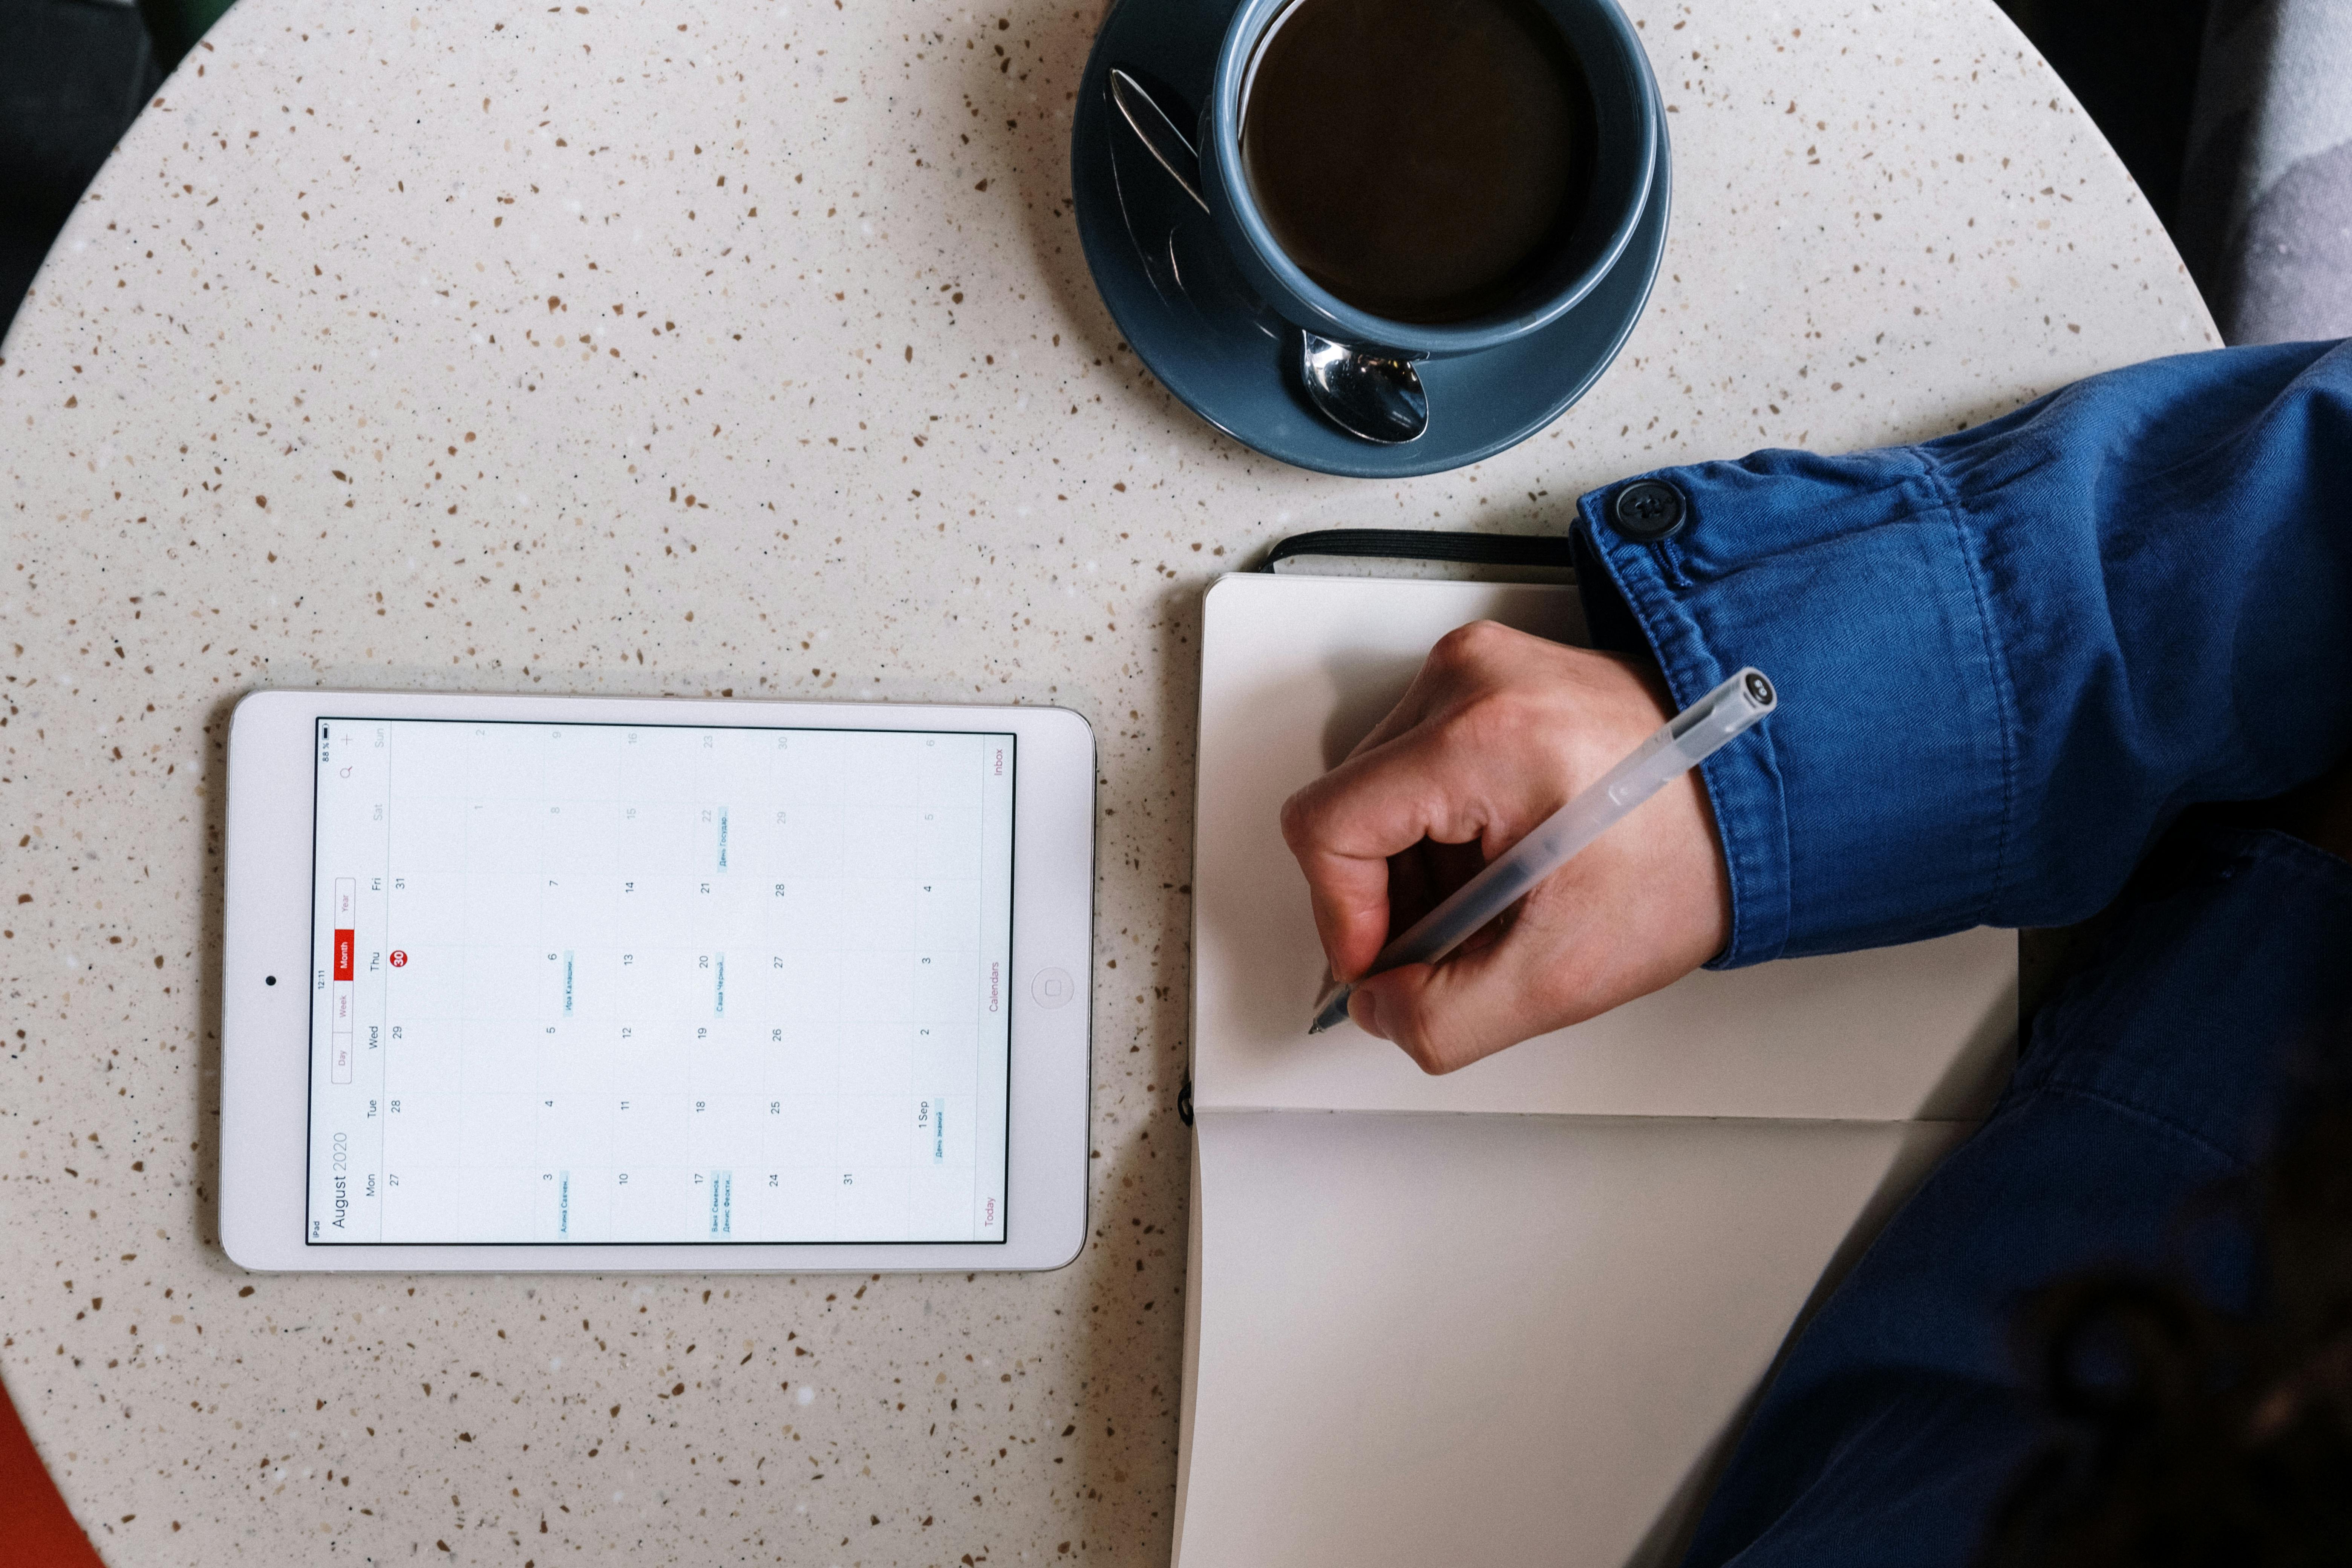 Dargestellt ist eine Person, die in einem Café mit einer Kaffeetasse Notizen aus einem digitalen Kalender macht